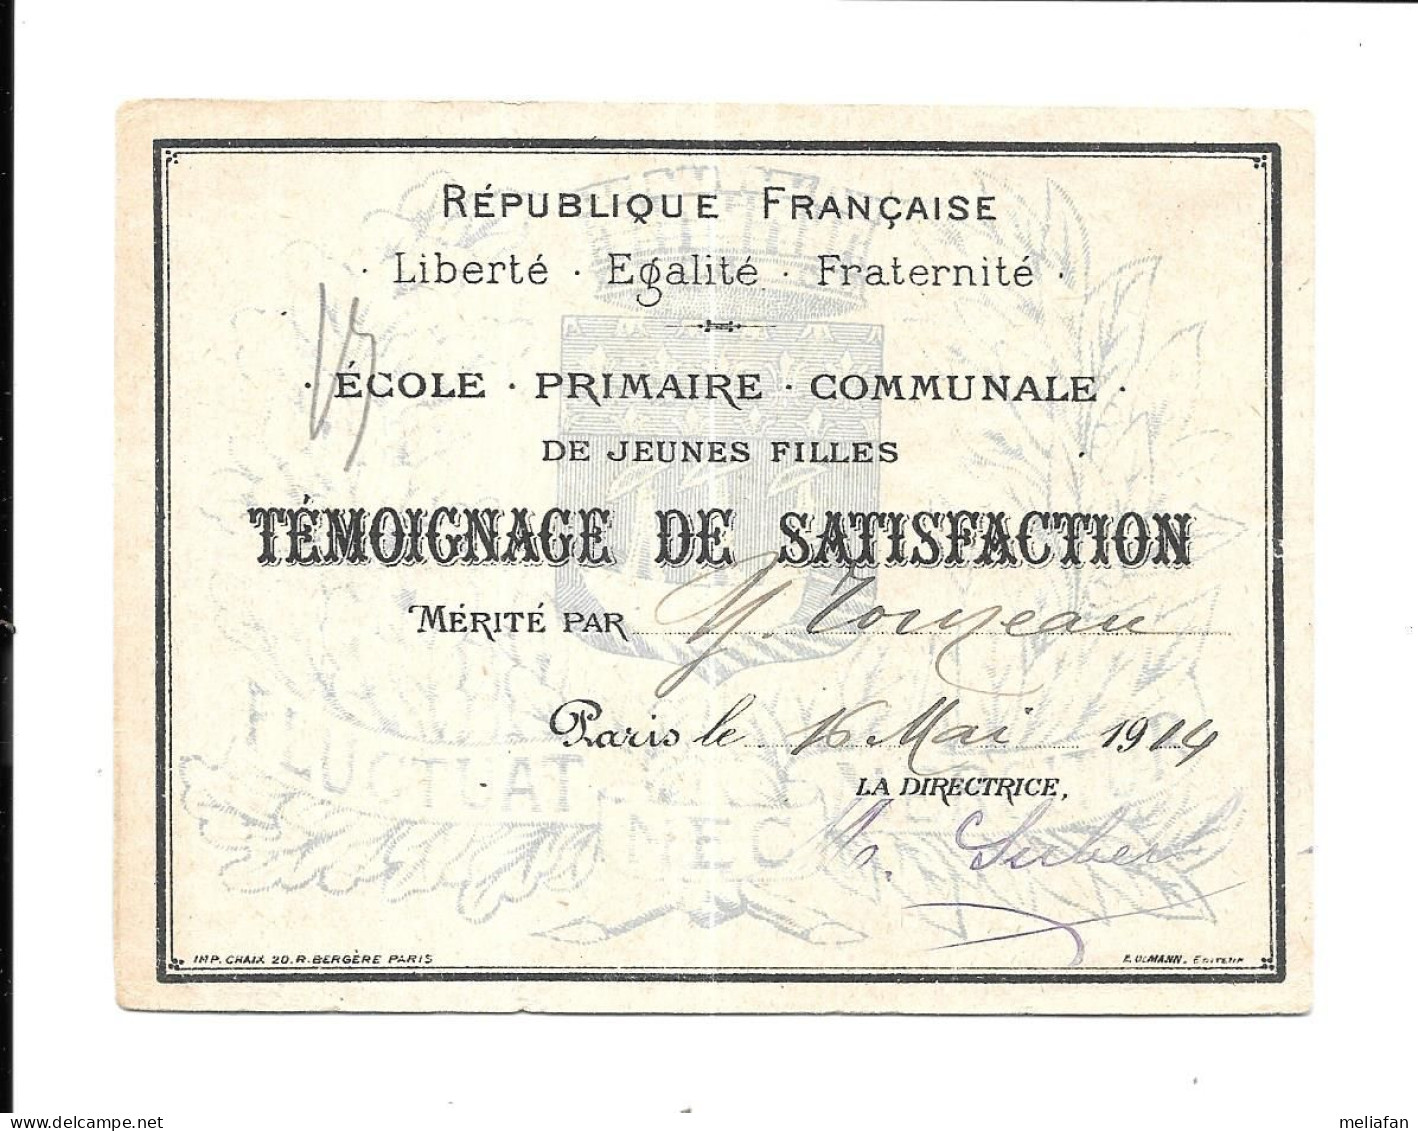 KB2106 - TEMOIGNAGE DE SATISFACTION - ECOLE PRIMAIRE COMMUNALE VILLE DE PARIS 1914 - TOINEAU - Diplome Und Schulzeugnisse